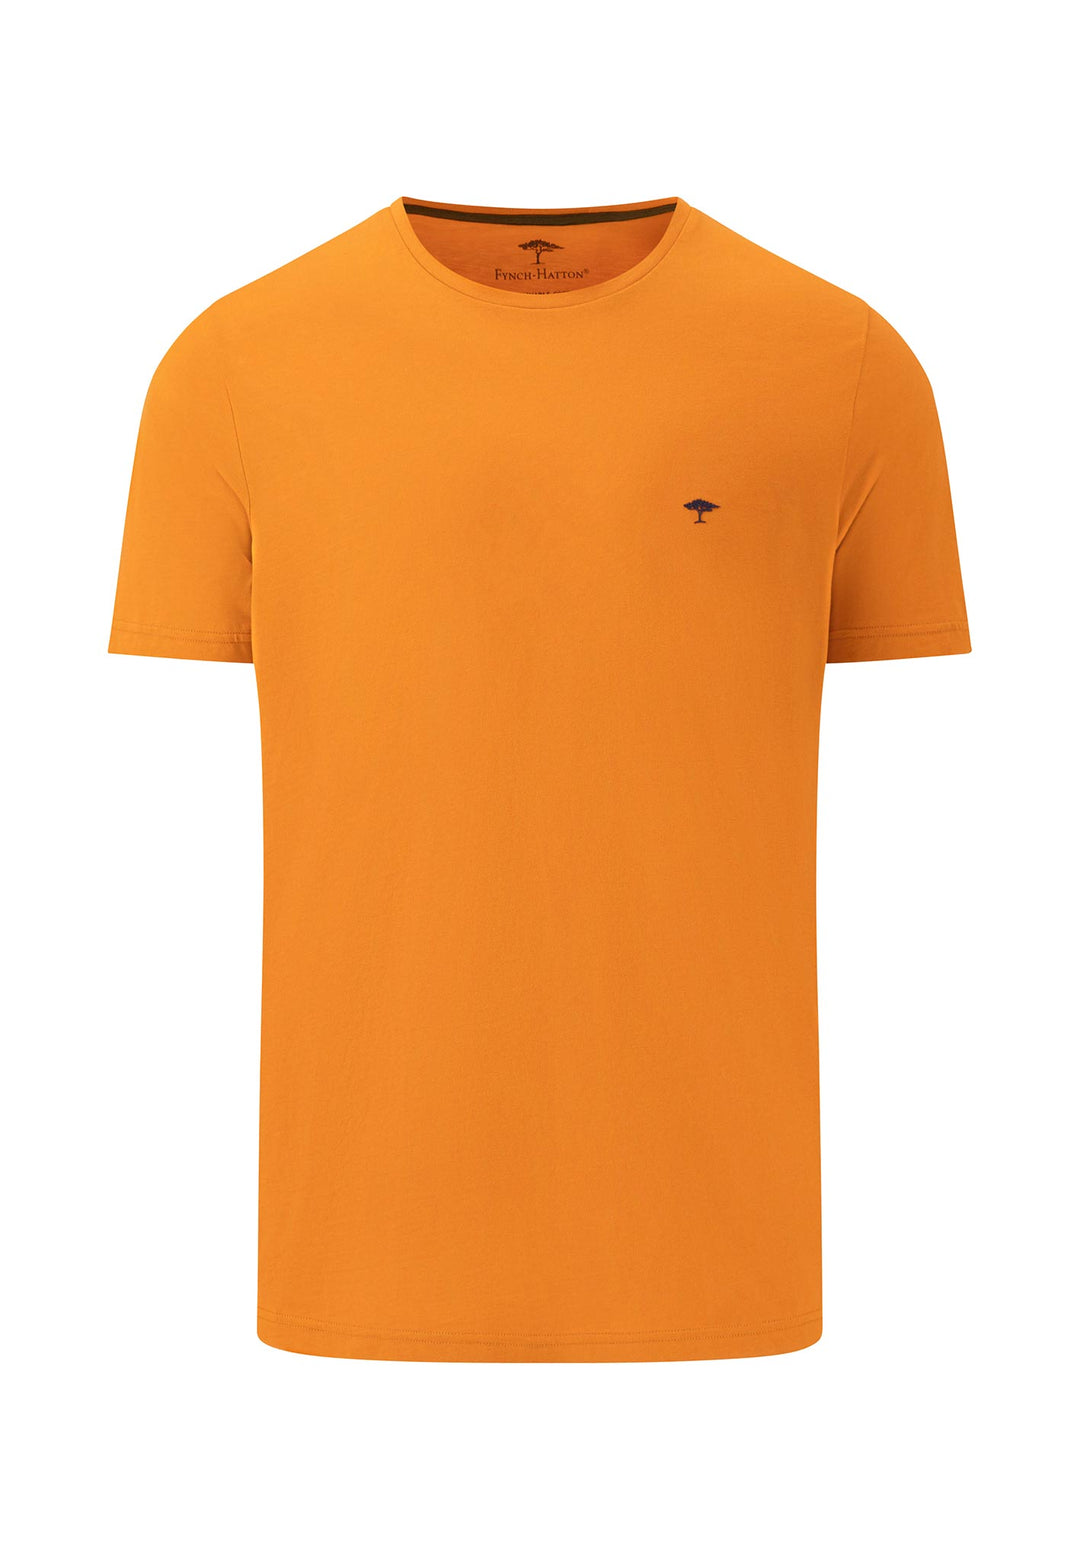 Offizieller Basic Online t-shirt Shop FYNCH-HATTON crew | neck –